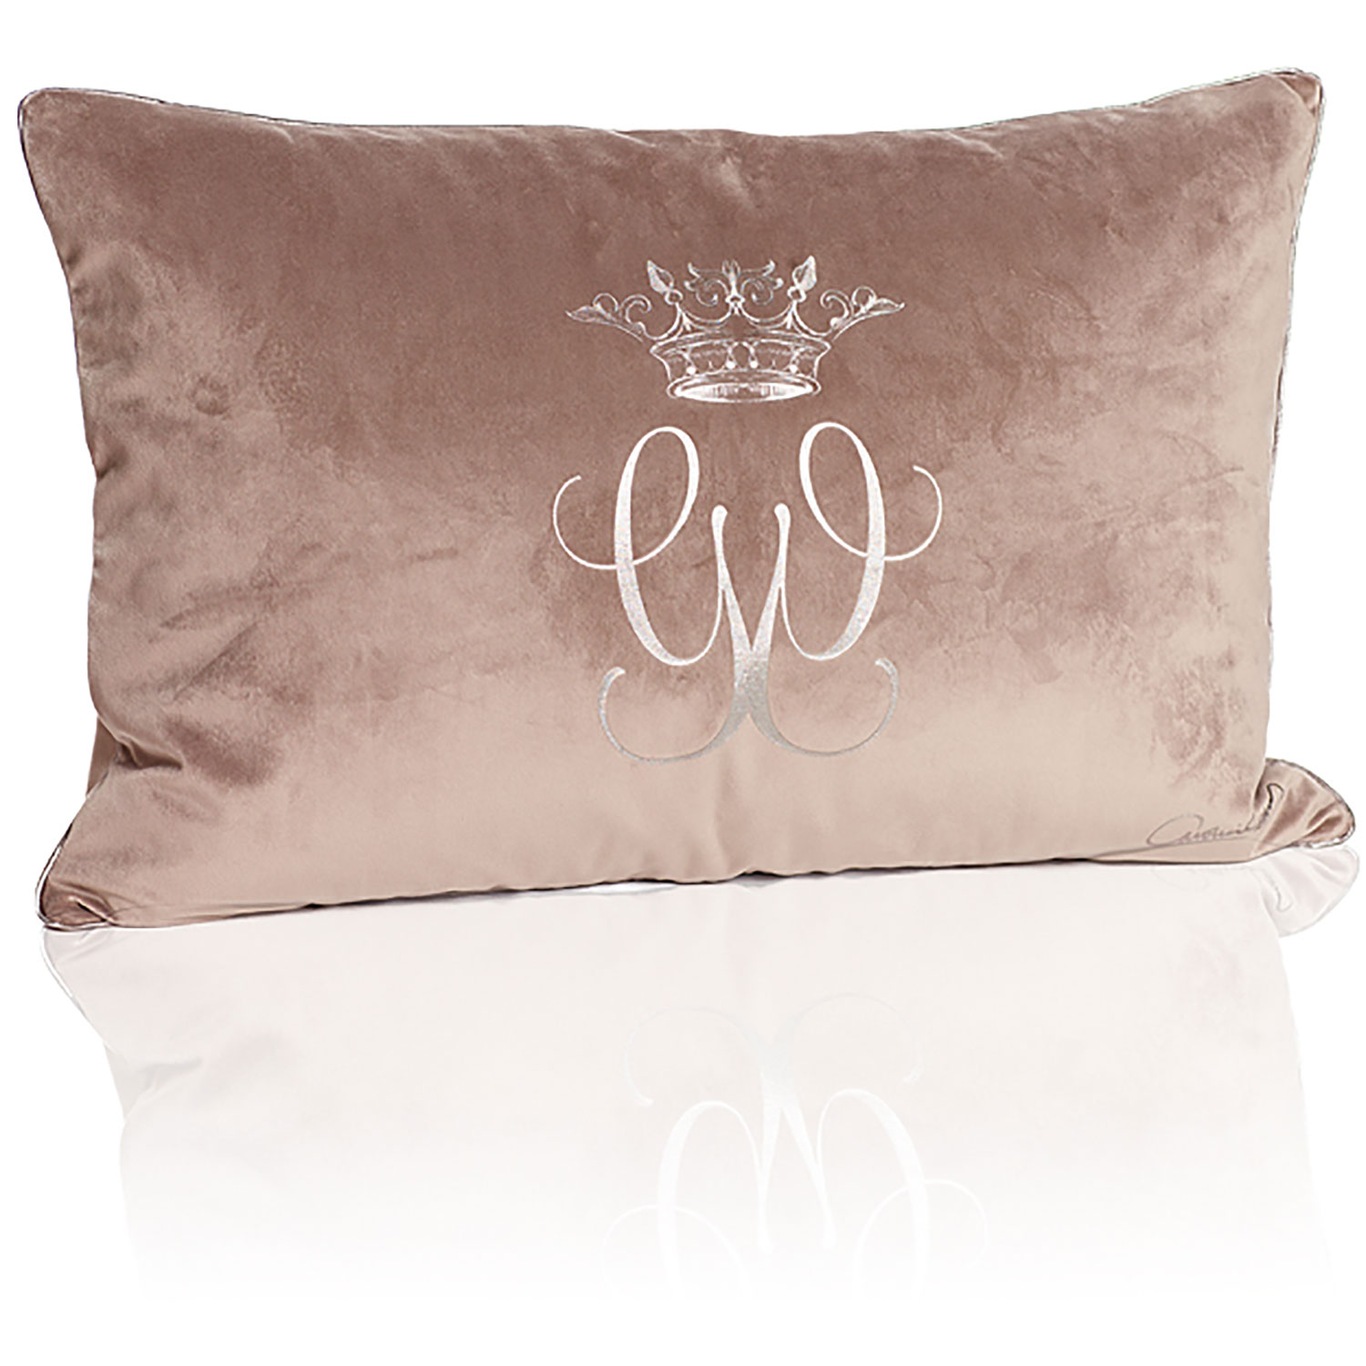 Royal Velvet Cushion Cover 40x60 cm, Beige/Grey